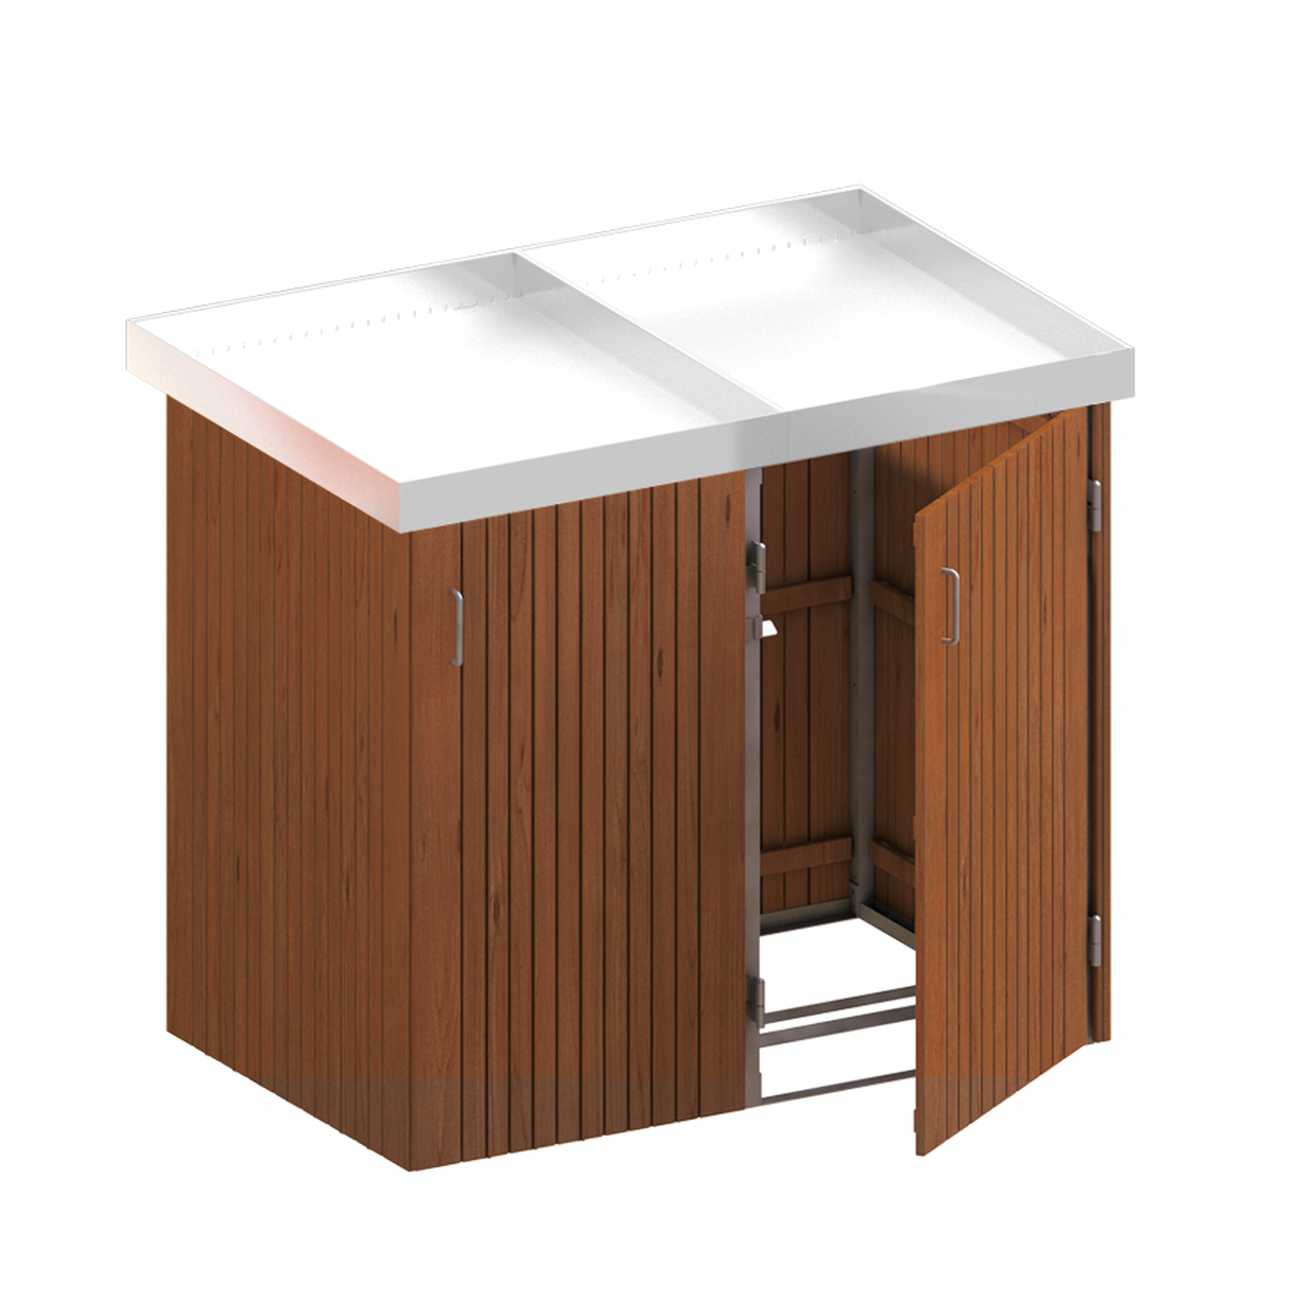 Binto Mülltonnenbox mit Hartholz-Verkleidung und Edelstahl-Pflanzschalen